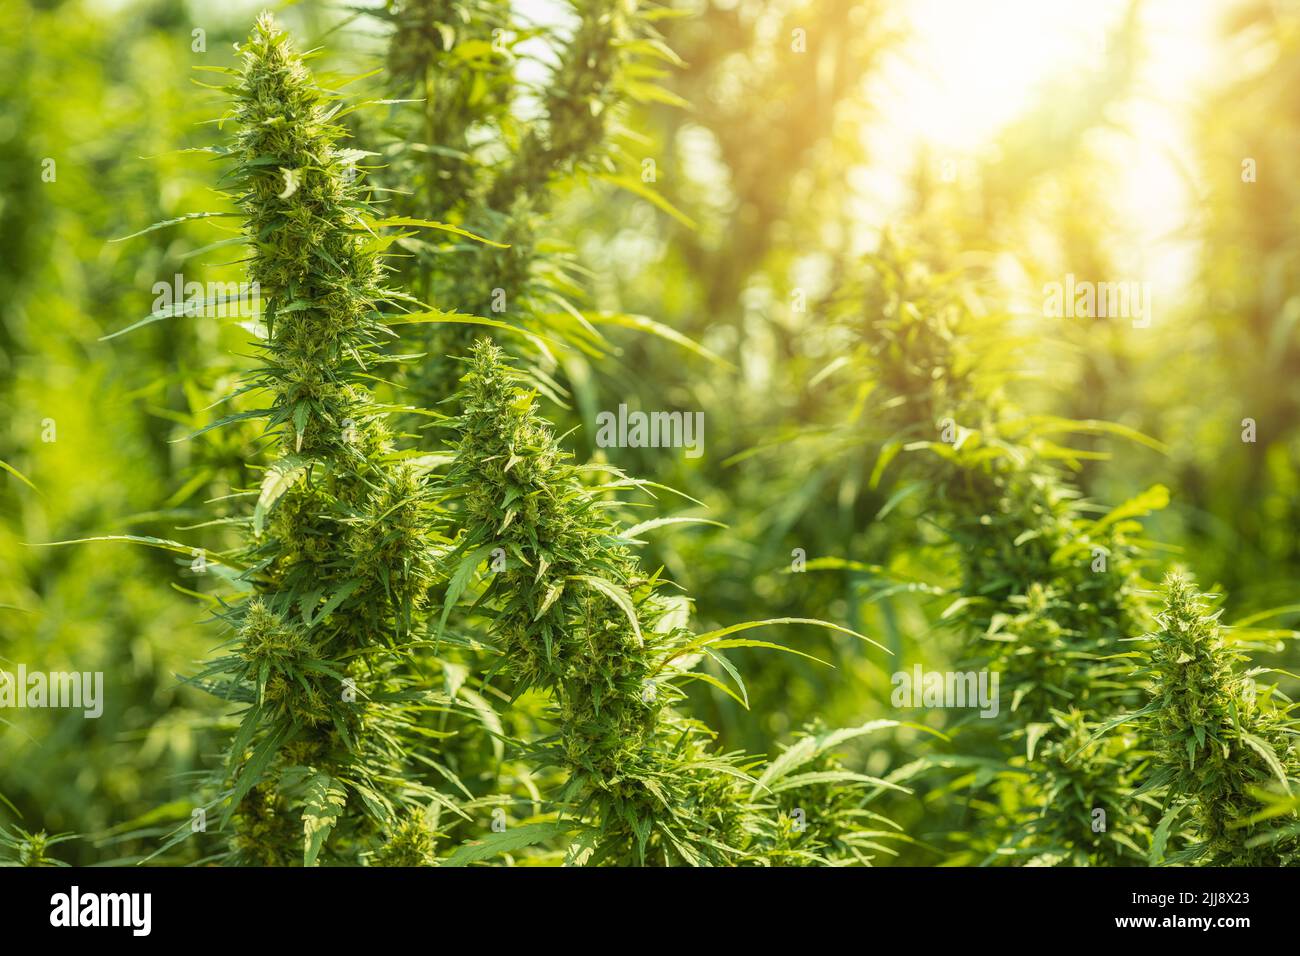 Cannabis stiva ou Cannabis indica champ de plantes vertes de la ferme de chanvre avec beau soleil Banque D'Images